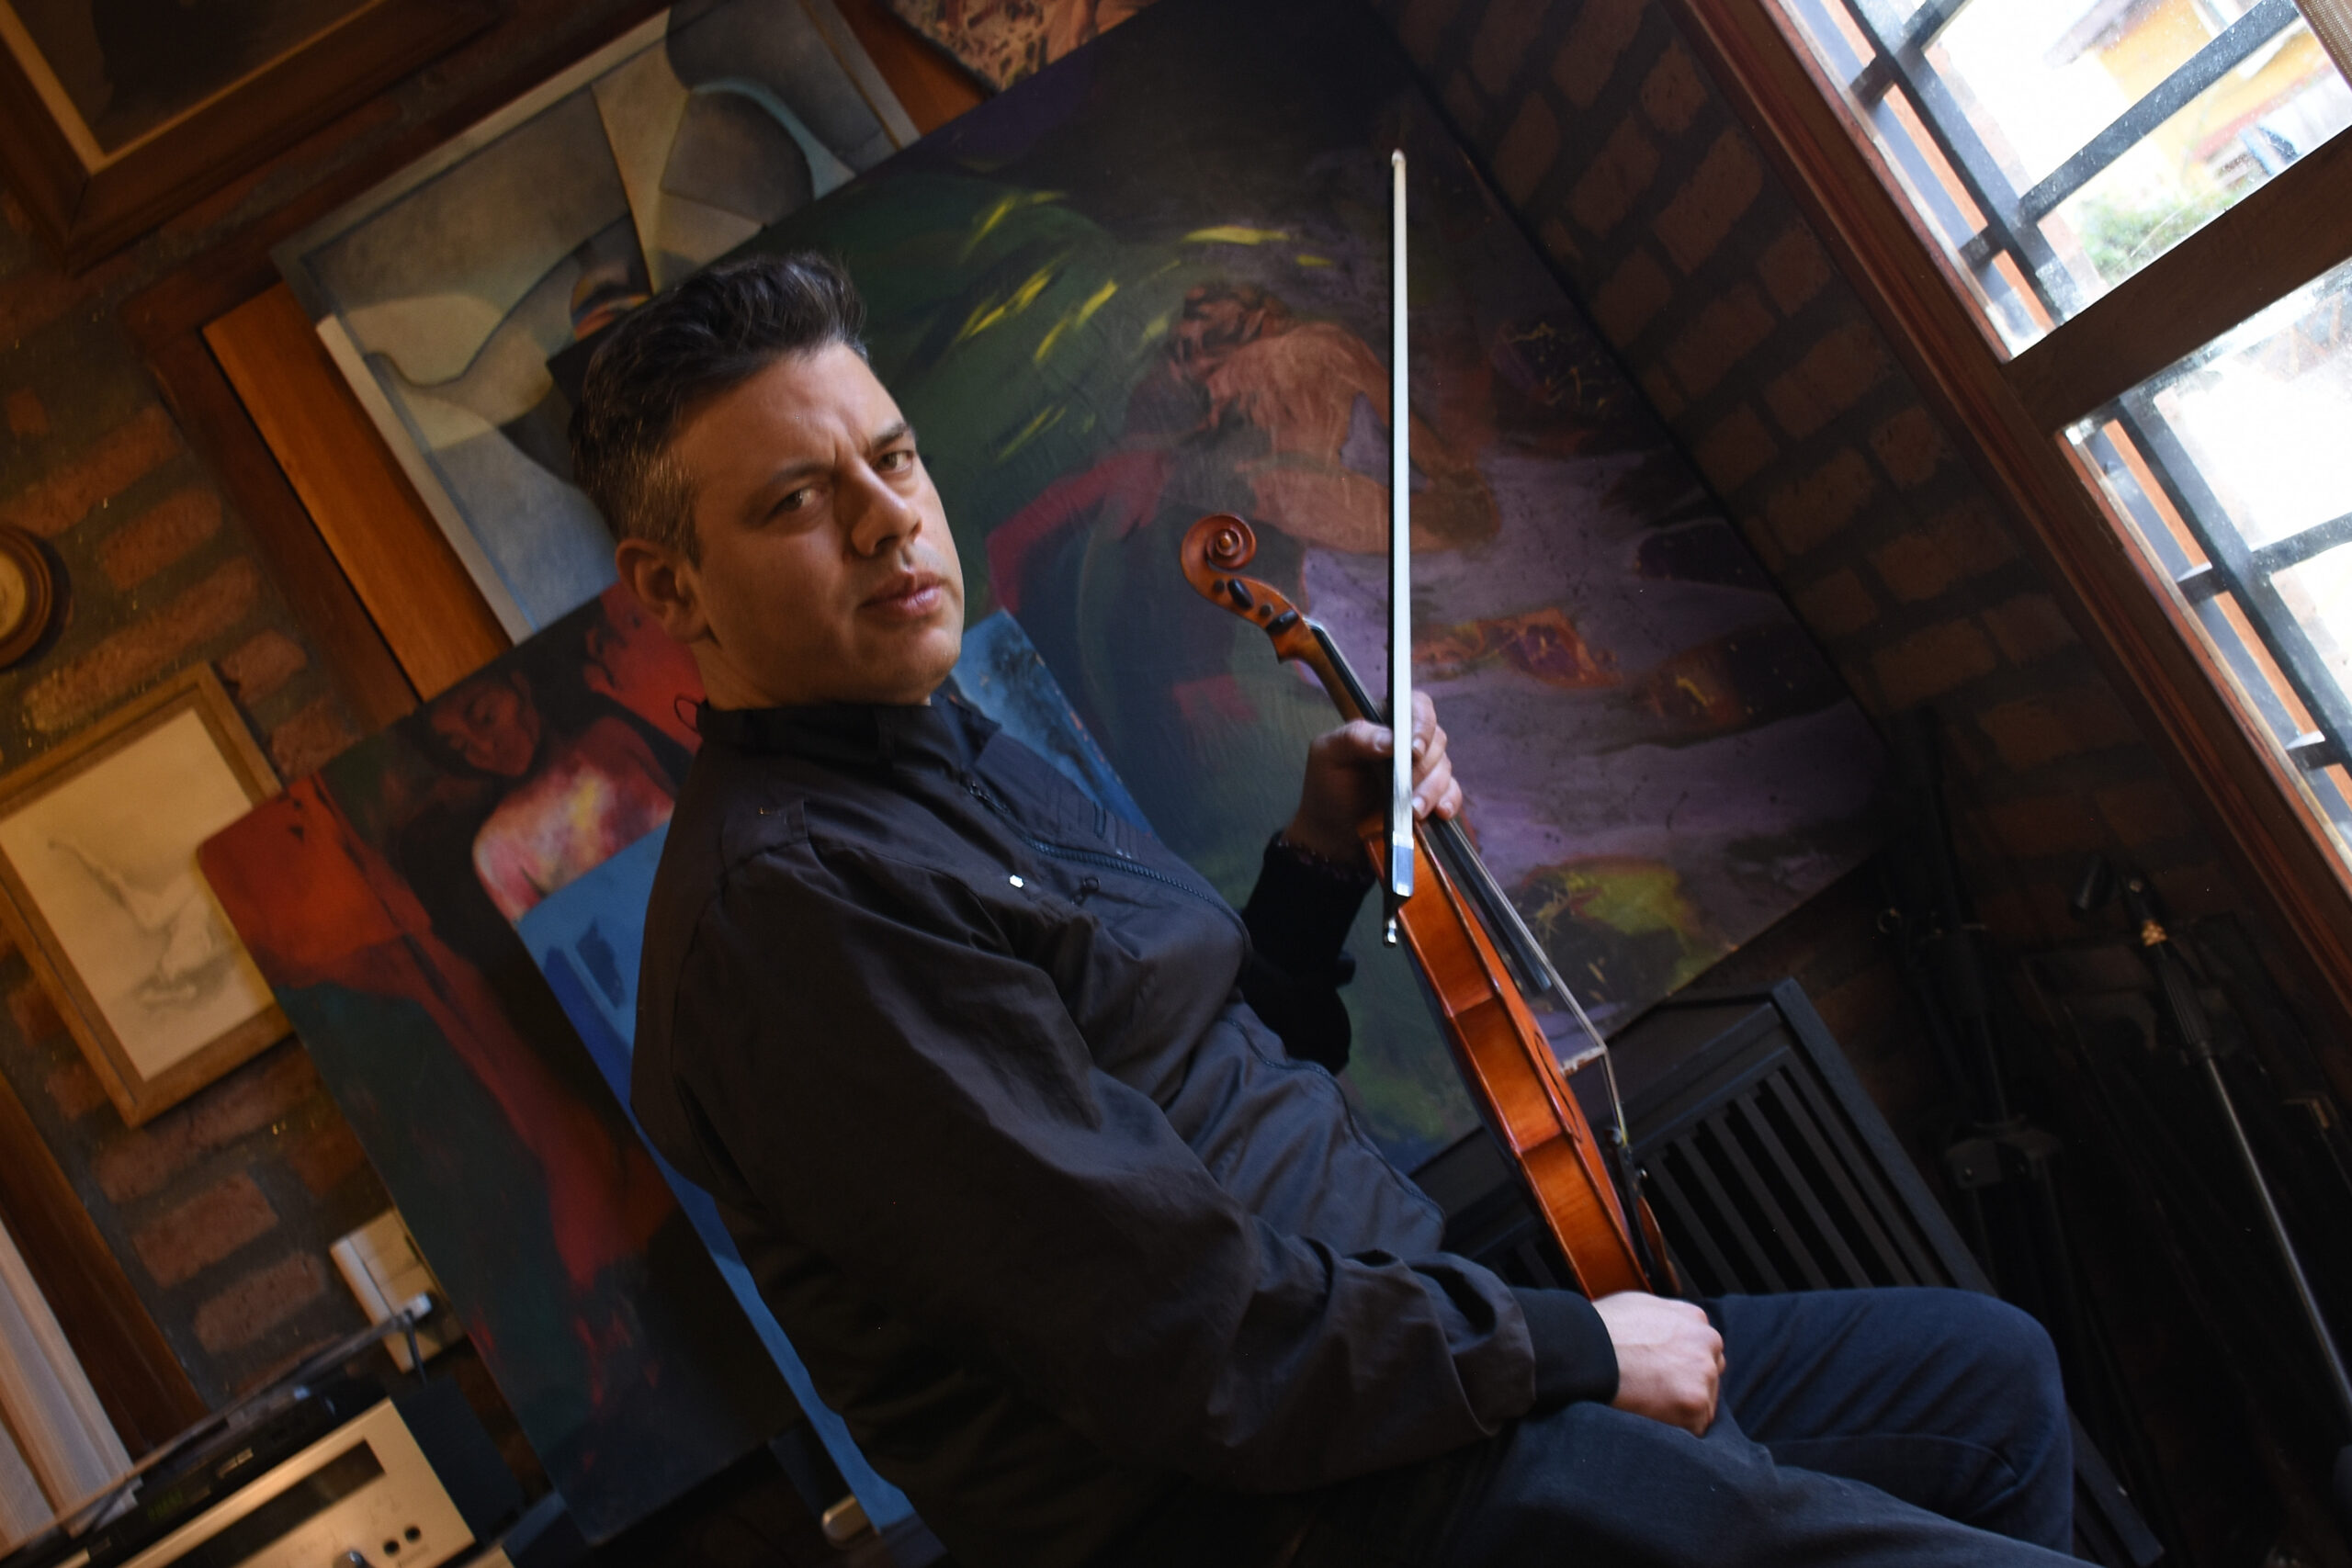 El violinista Víctor Renaudeau se presentará en la Casa del Poeta